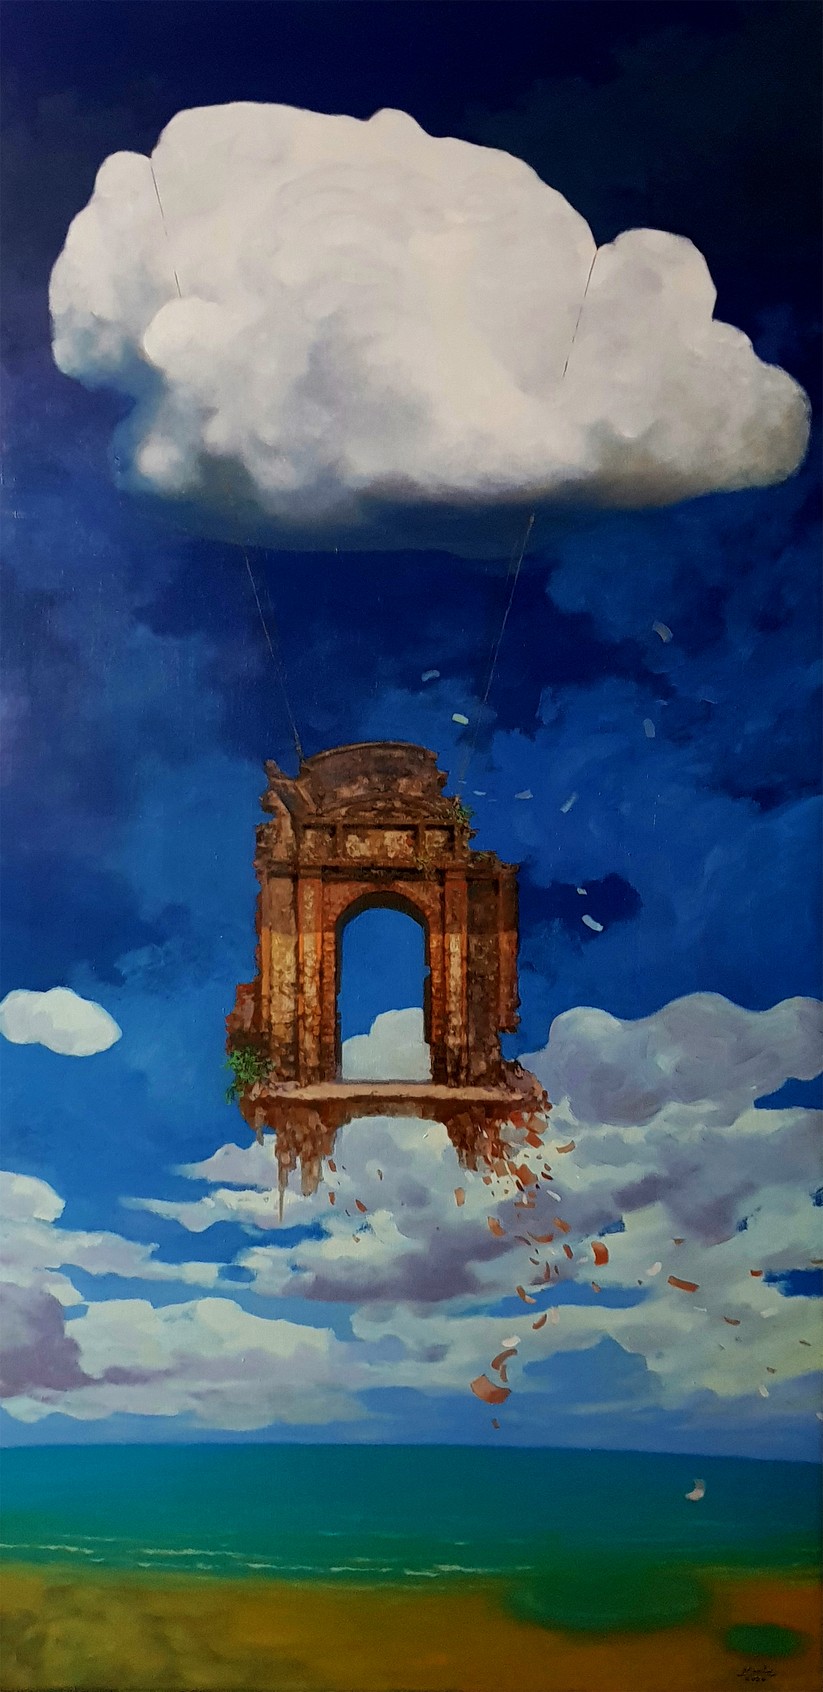 Tác phẩm Du ngoạn 1 (sơn dầu, 120cm x 60cm, 2020) của Nguyễn Ngọc Anh